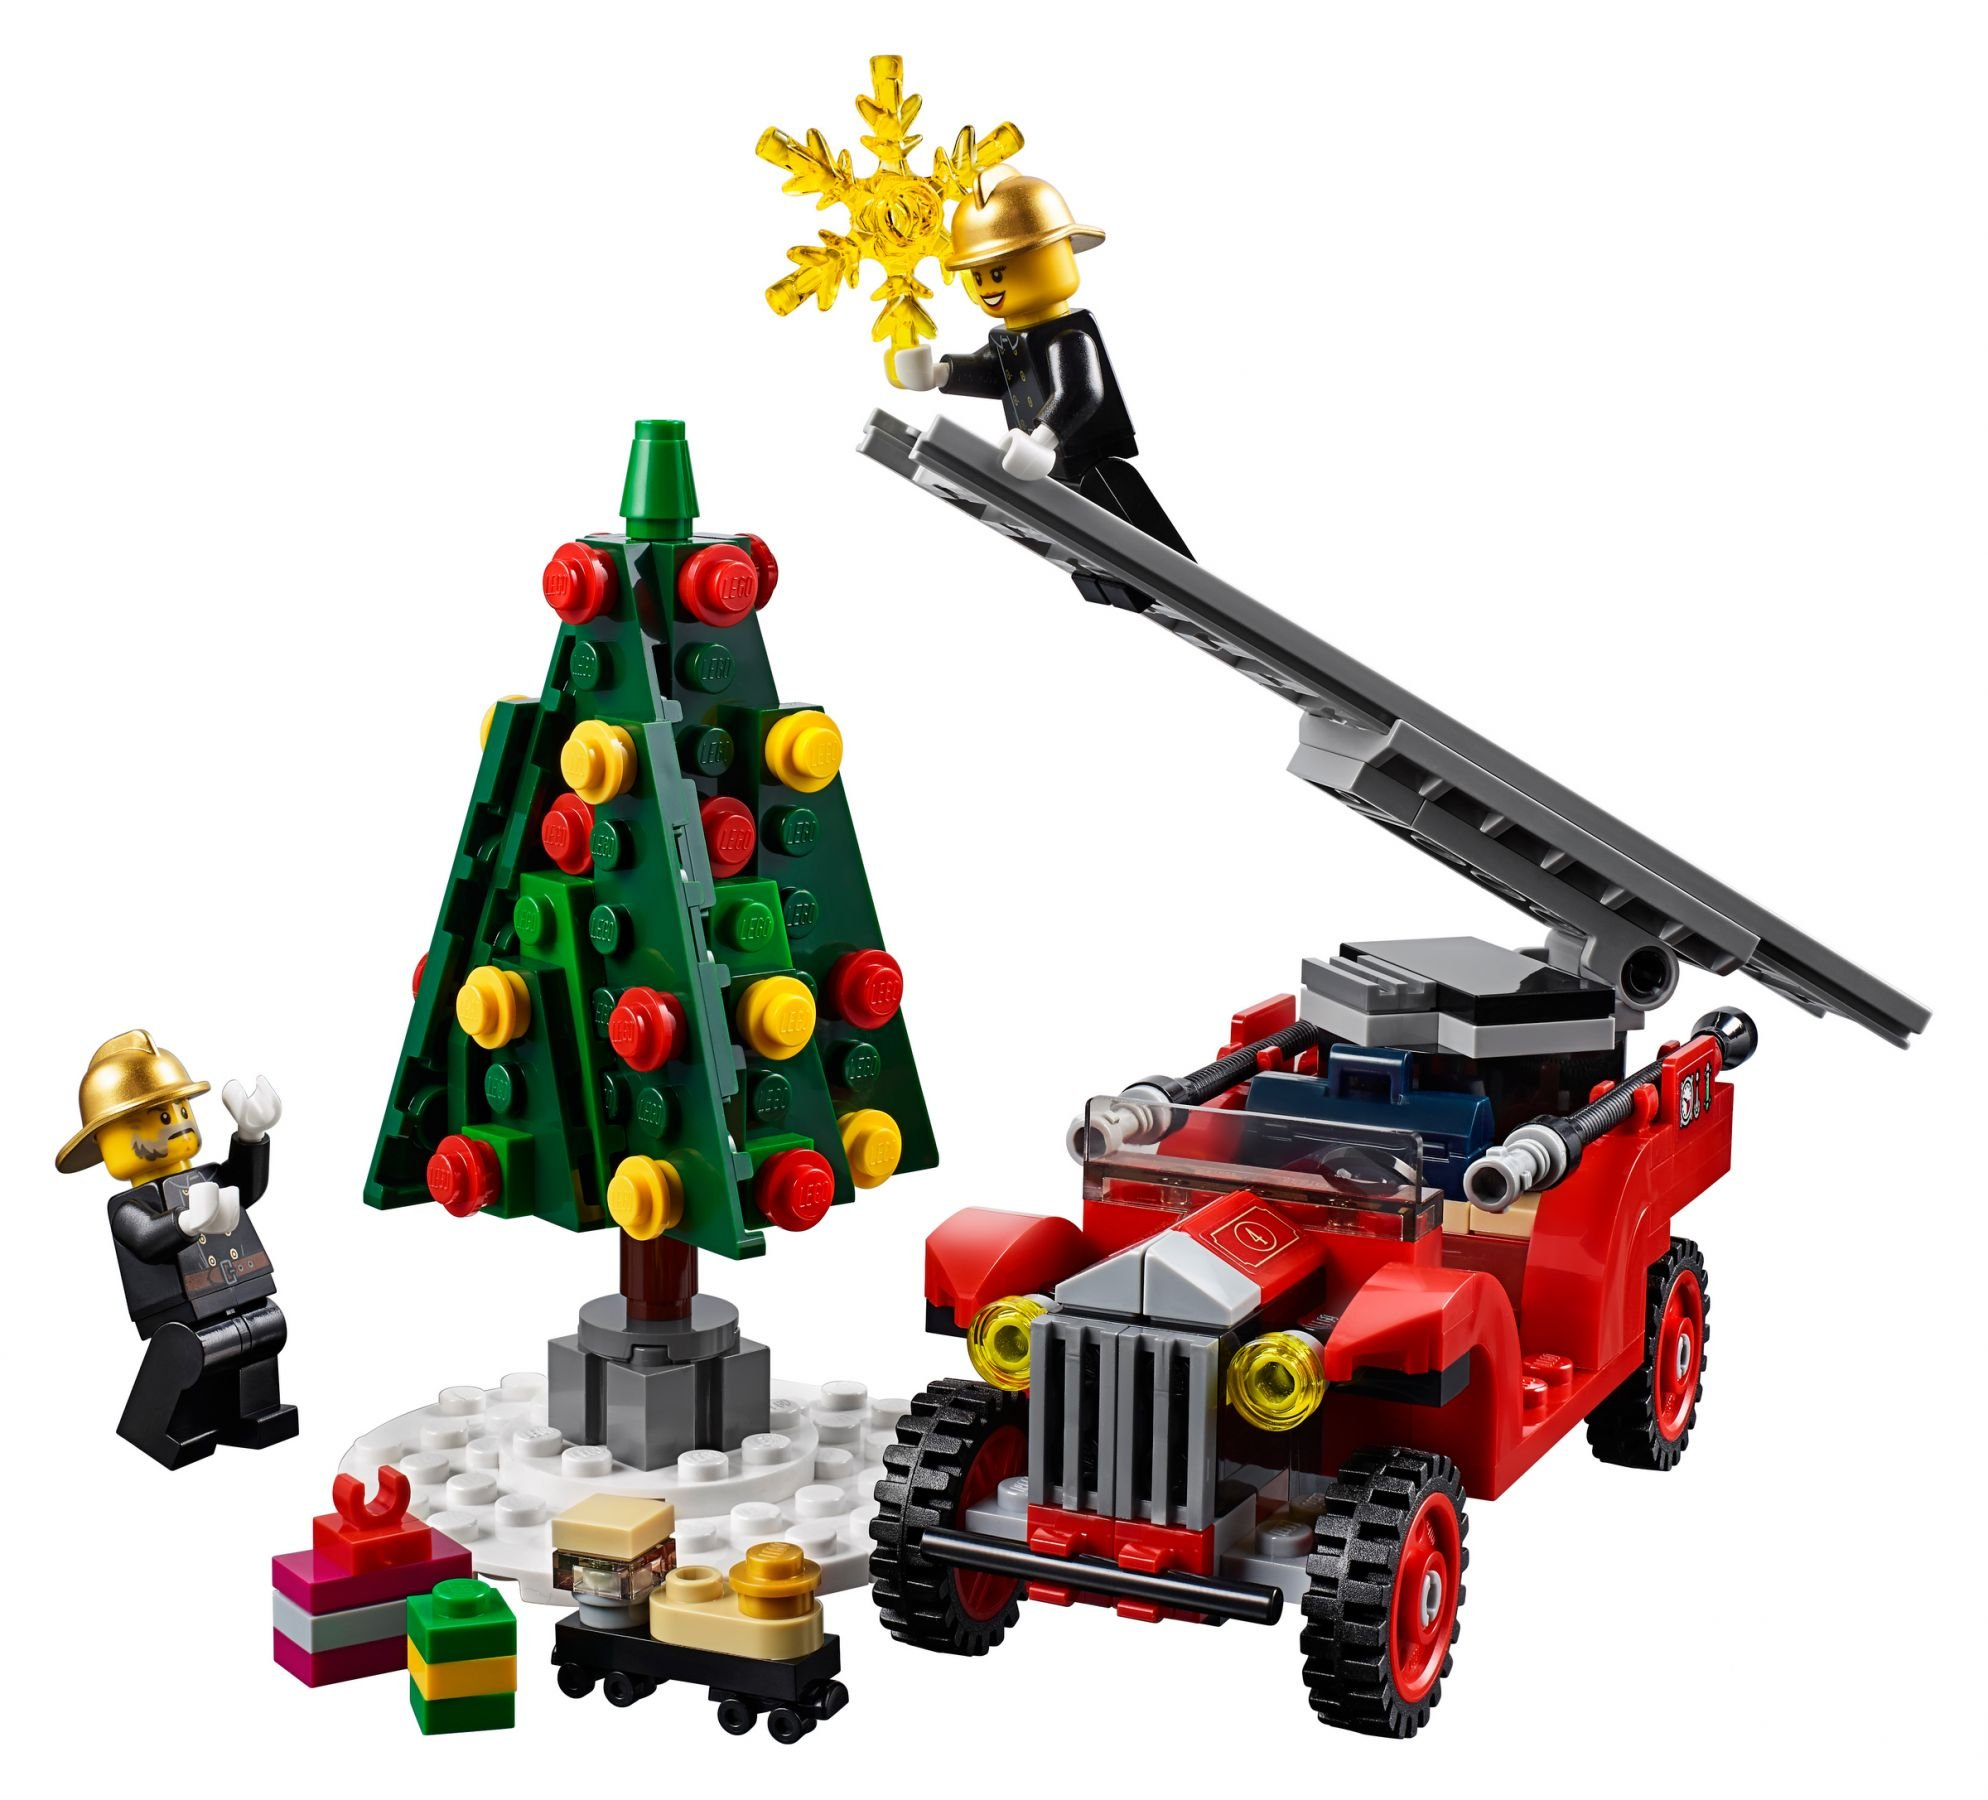 LEGO Creator Expert Feuerwehrstation Bausatz 10263 Winterliche